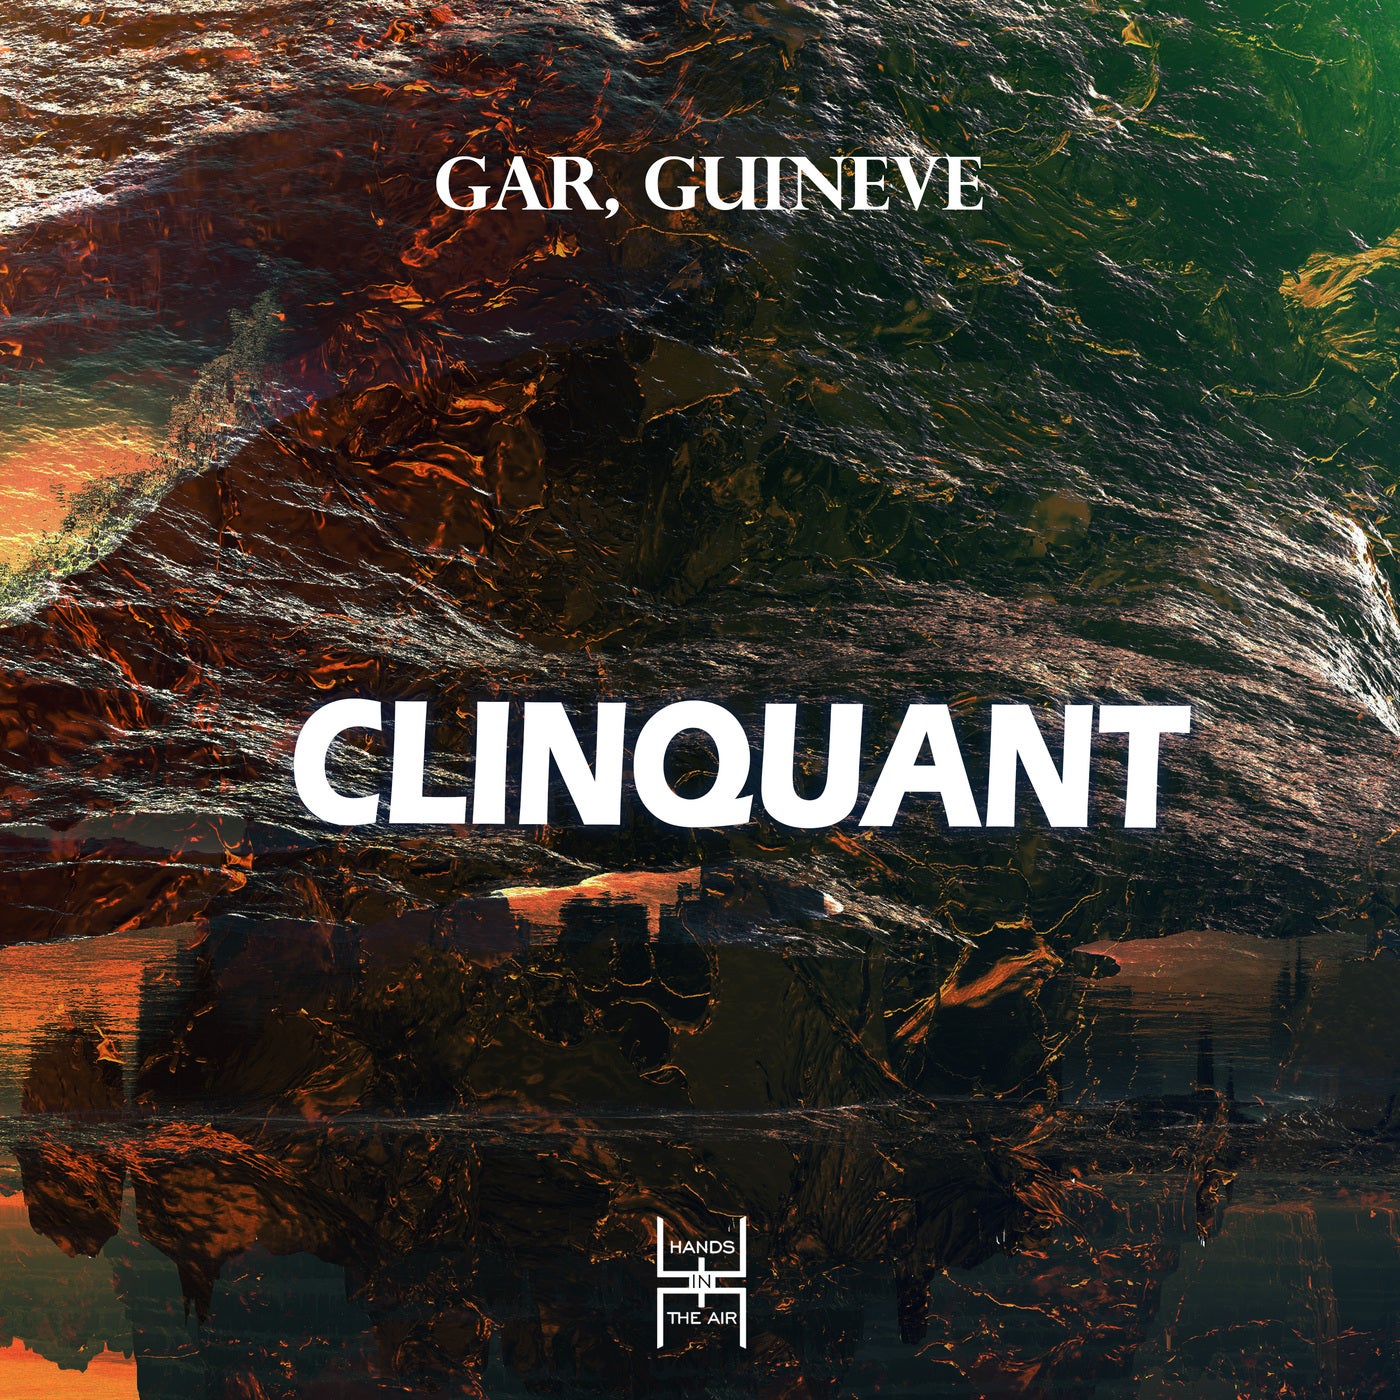 GAR, Guineve - Clinquant [HIA132]